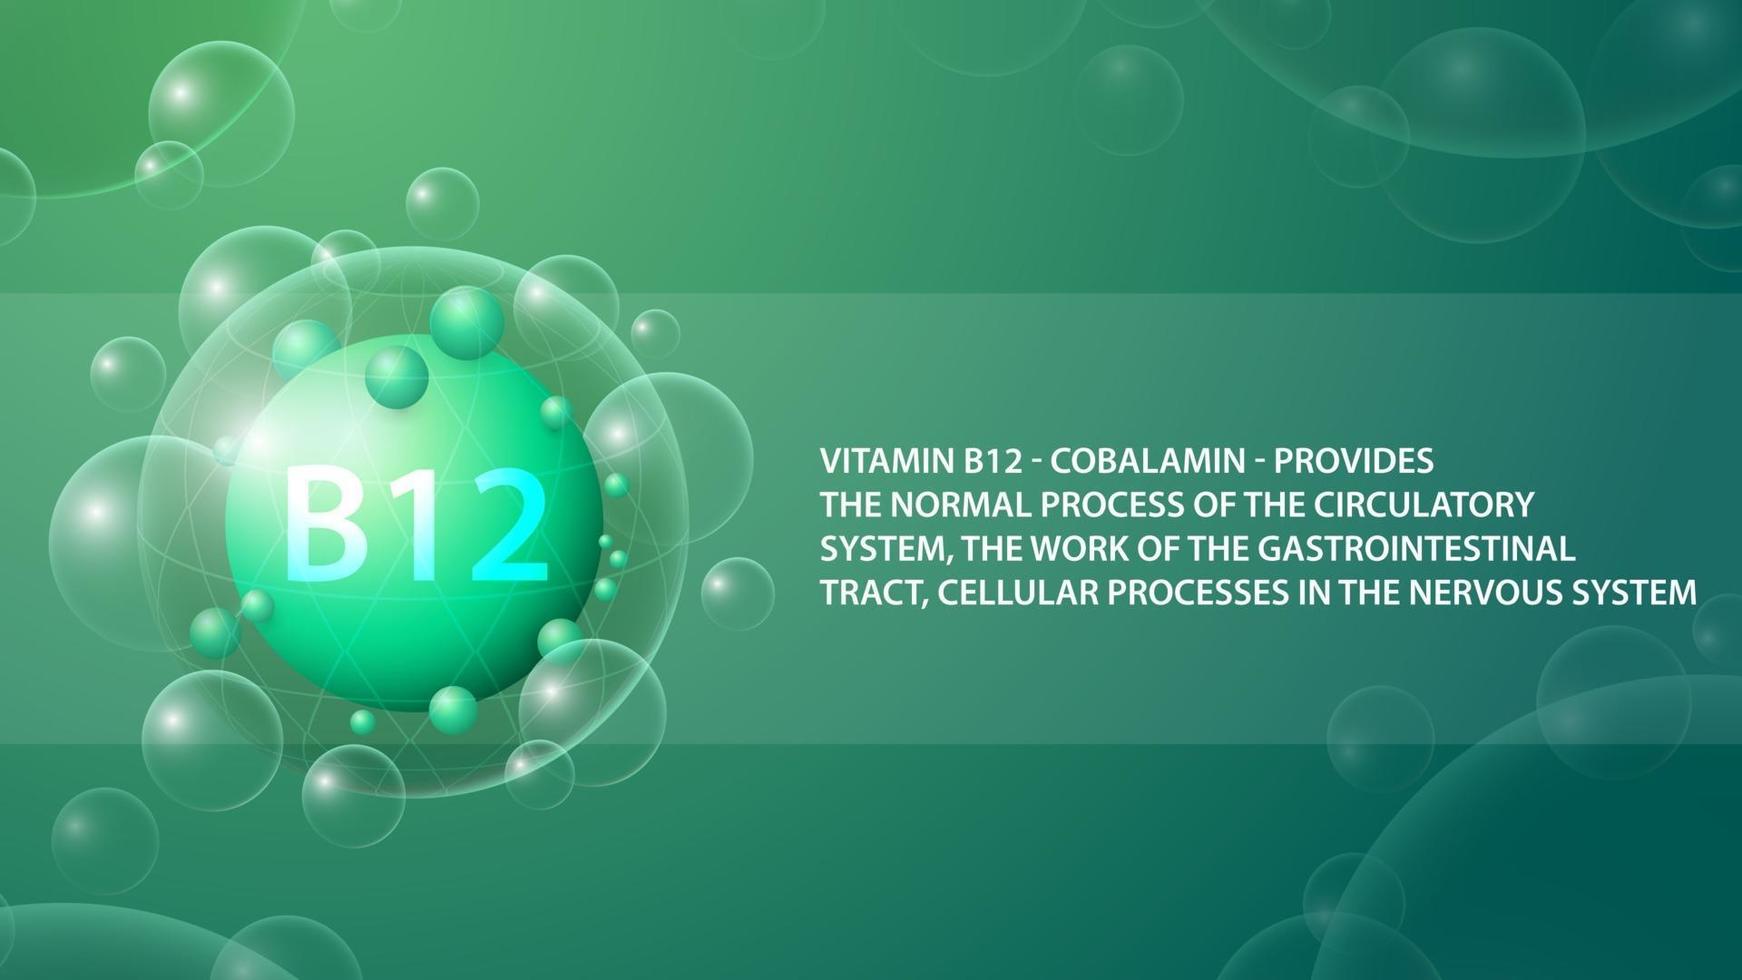 vitamine b12, groene informatieposter met abstracte medicijncapsule van vitamine b12 vector